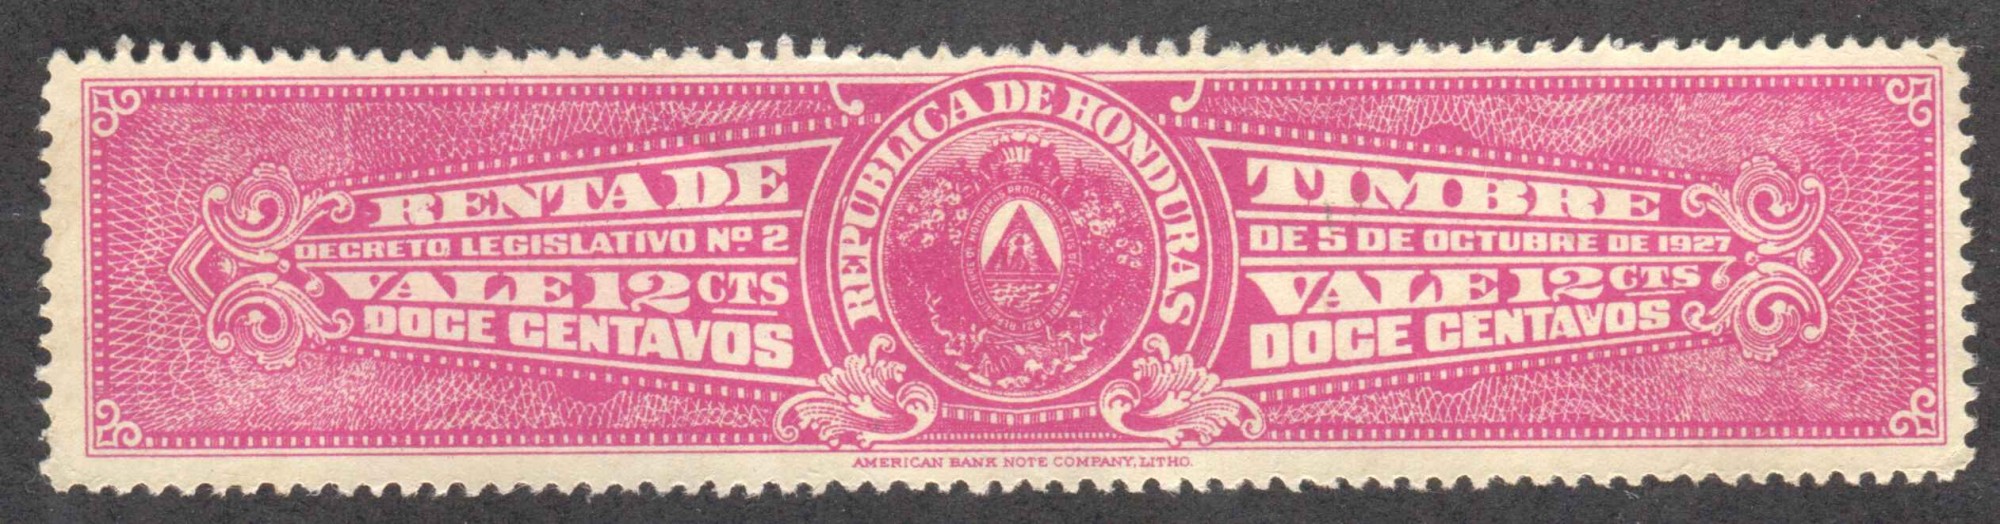 1927 12c Renta de Timbre revenue stamp of Honduras